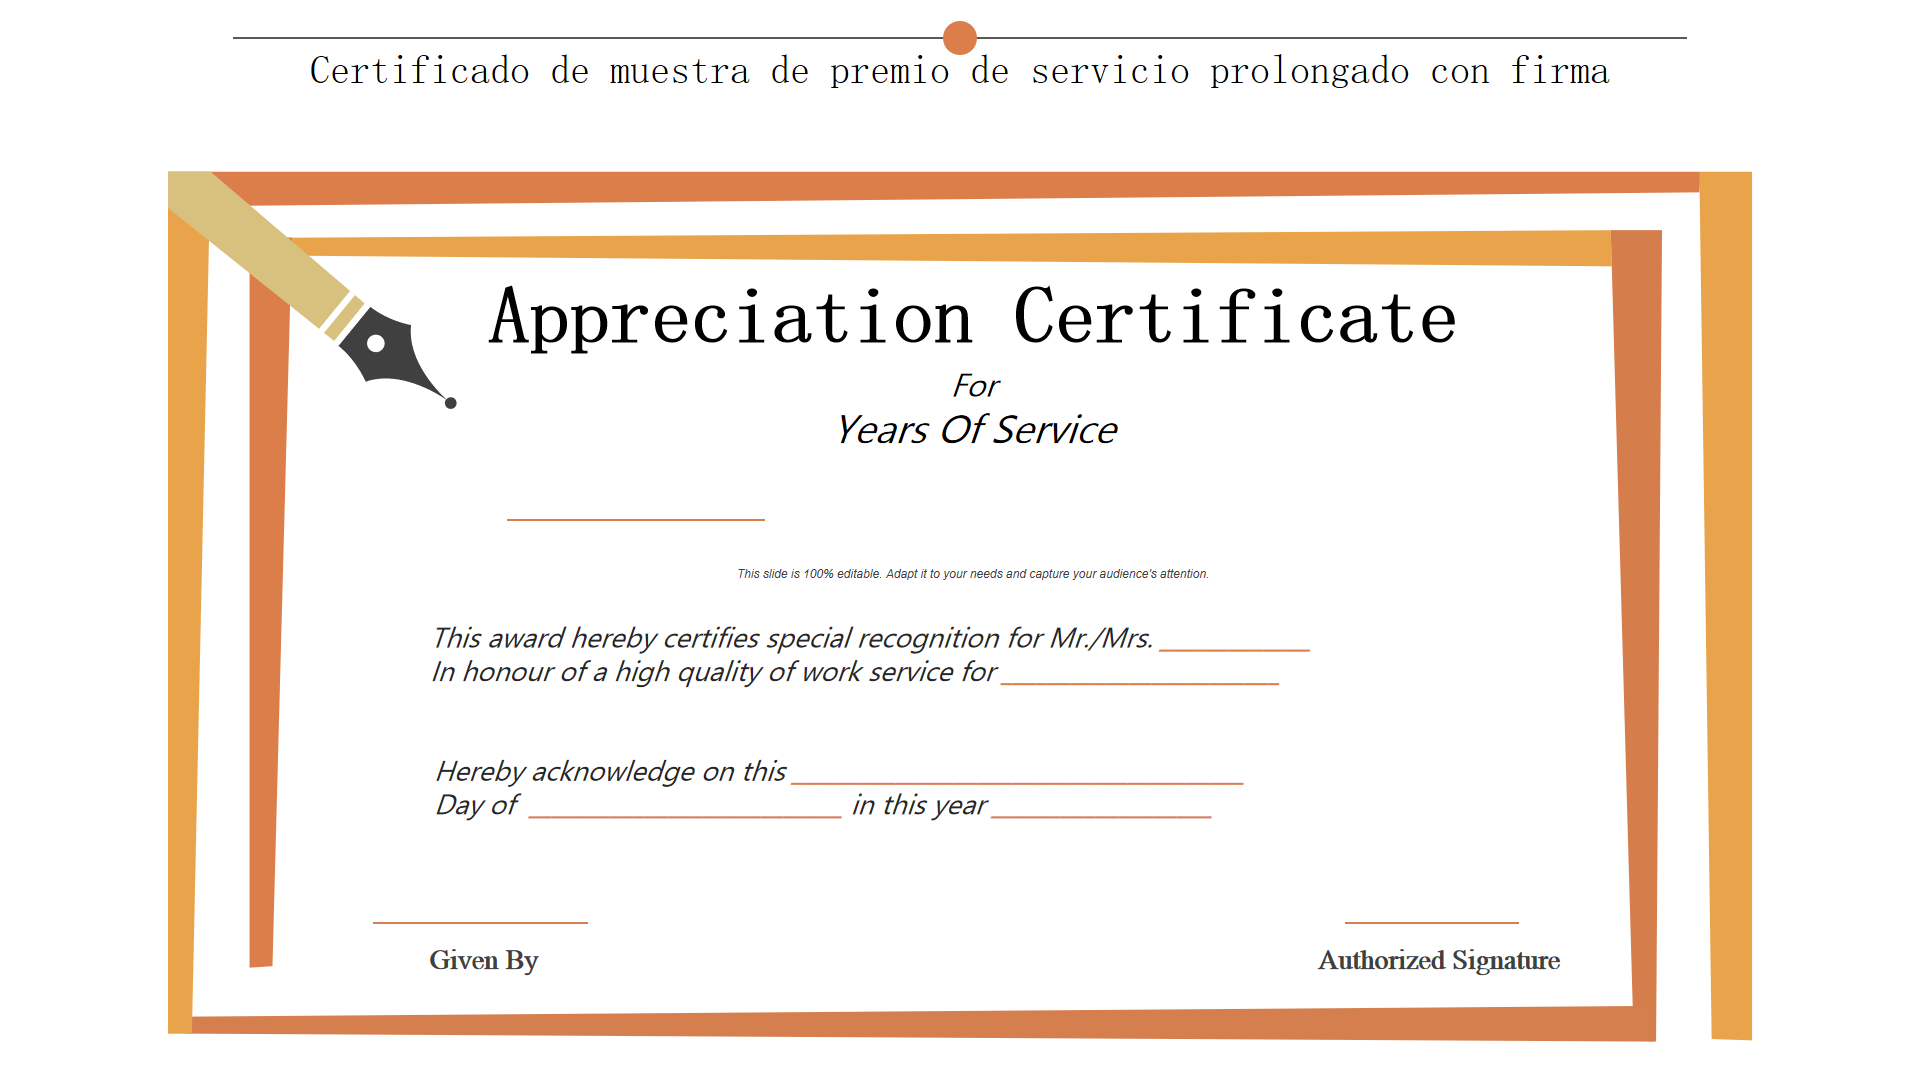 Certificado de muestra de premio de servicio prolongado con firma